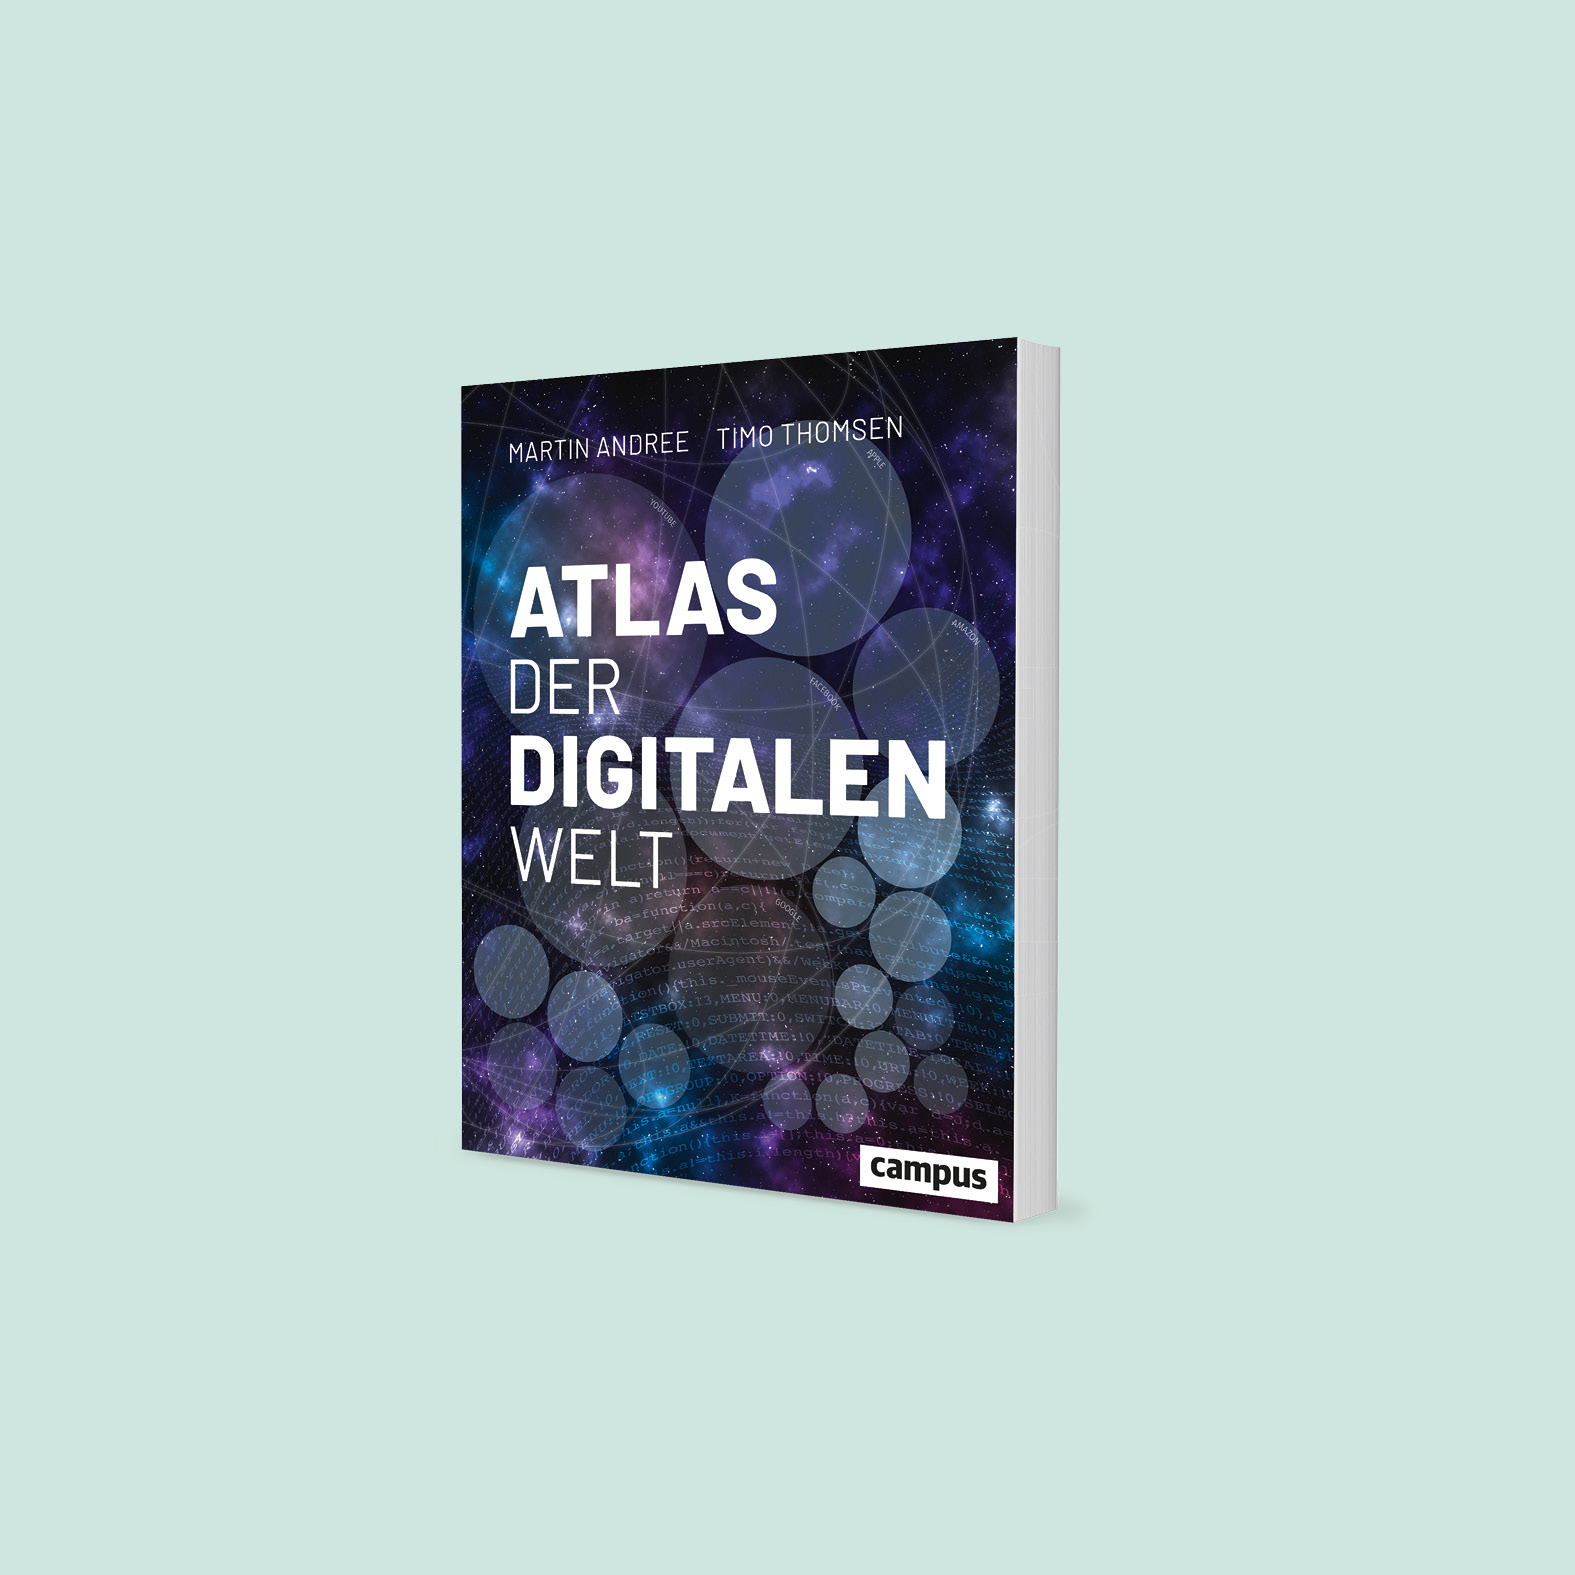 Beispiel Atlas der digitalen Welt